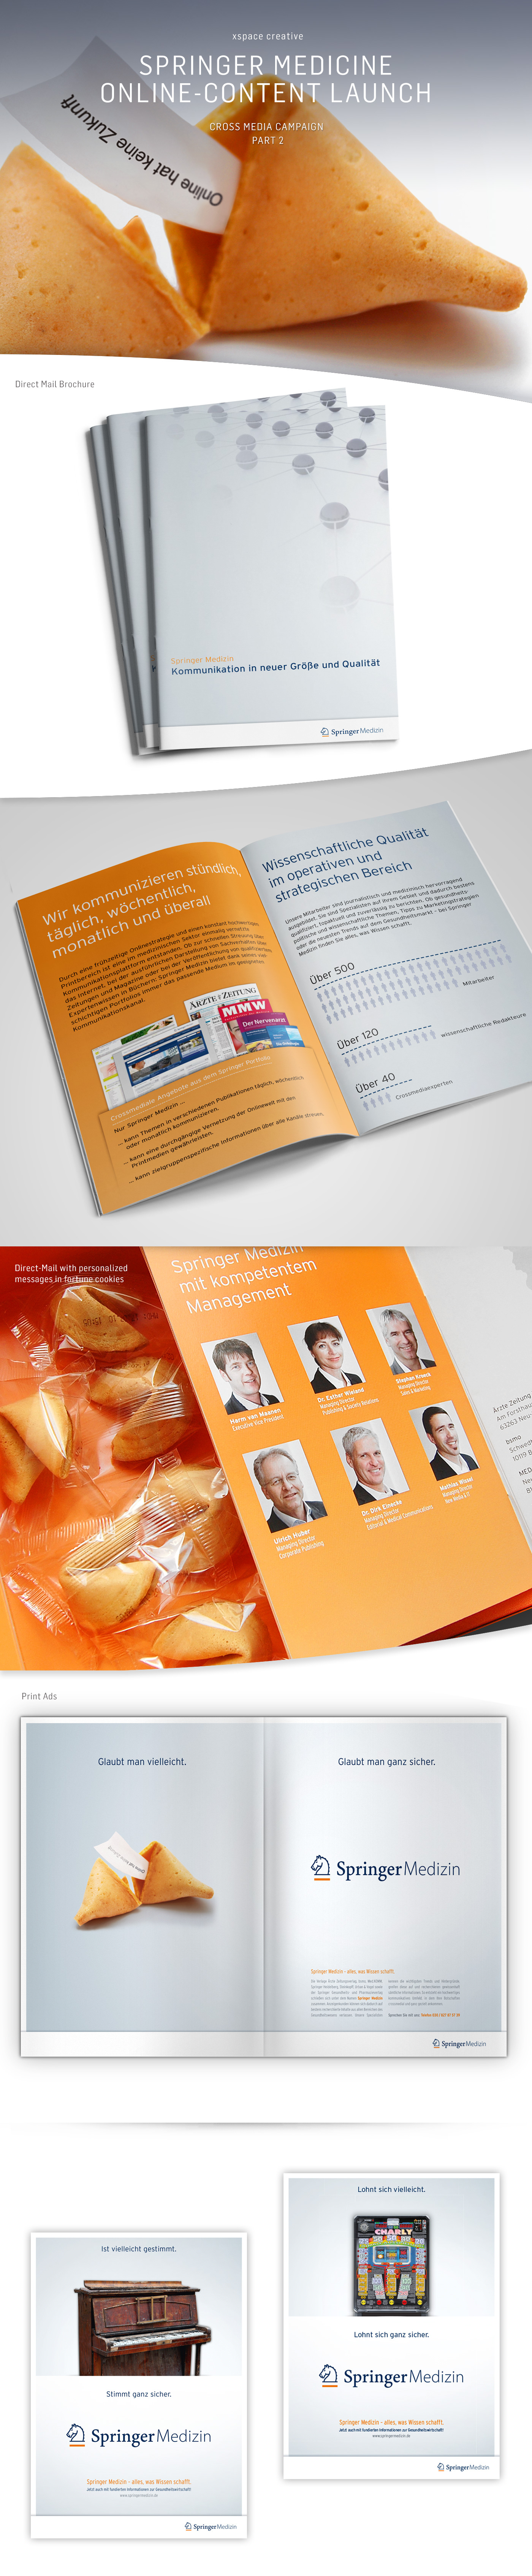 Springer Medicine Campaign Medicine Campaign Medizin Medizin Kampagne fortune cookie Glückskeks Direct mail